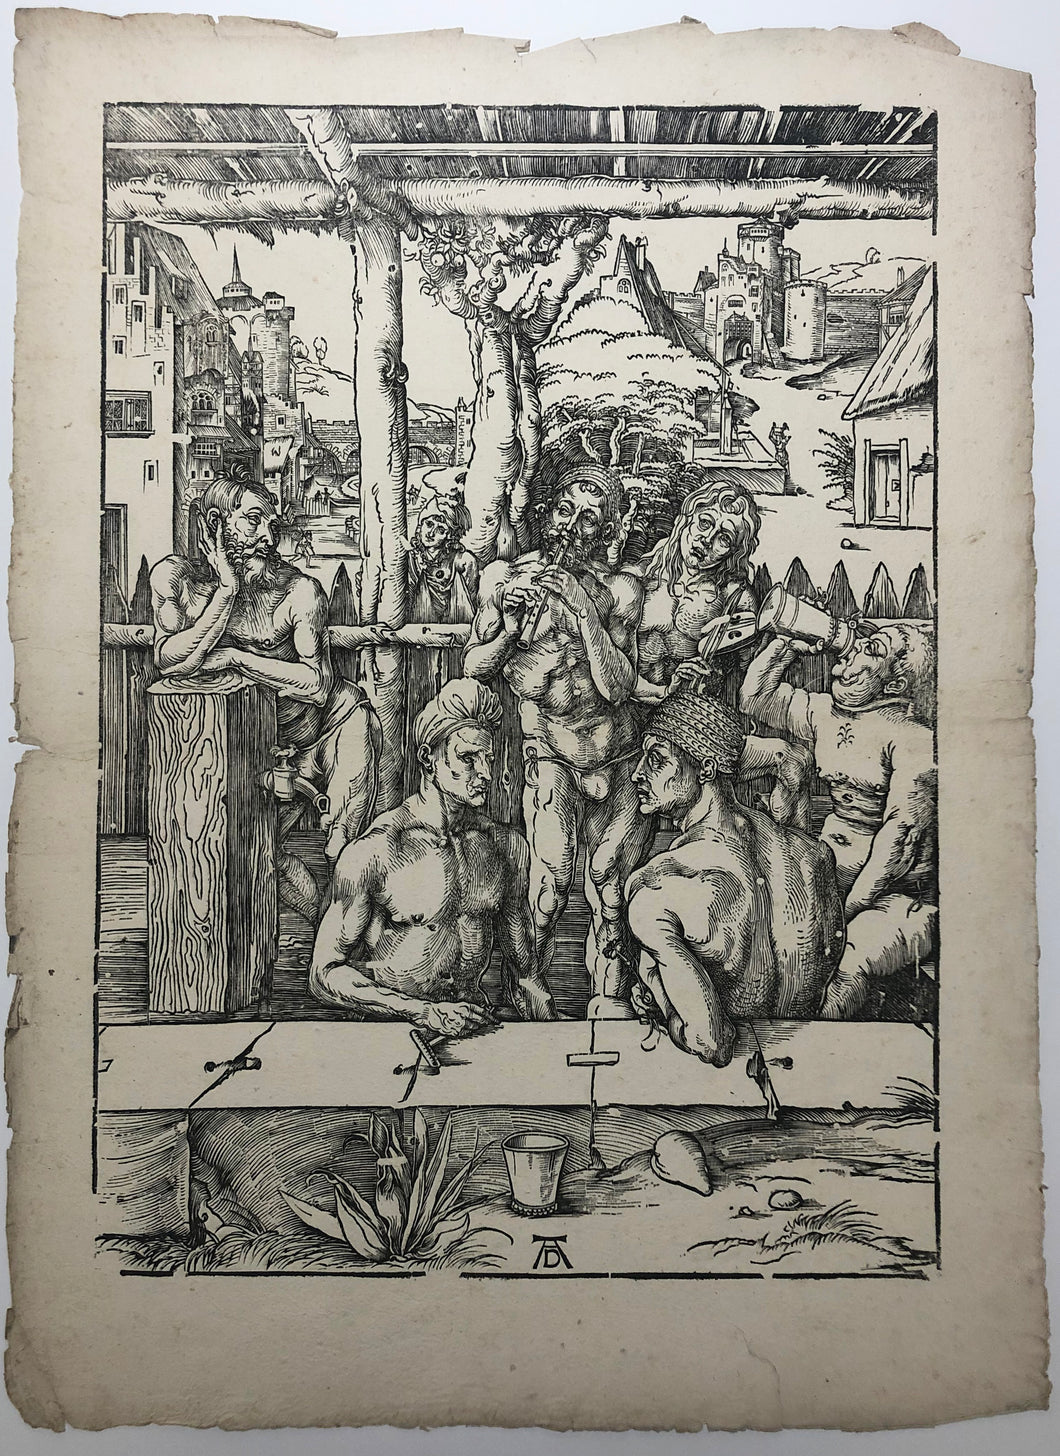 Le bain des hommes. c.1498.